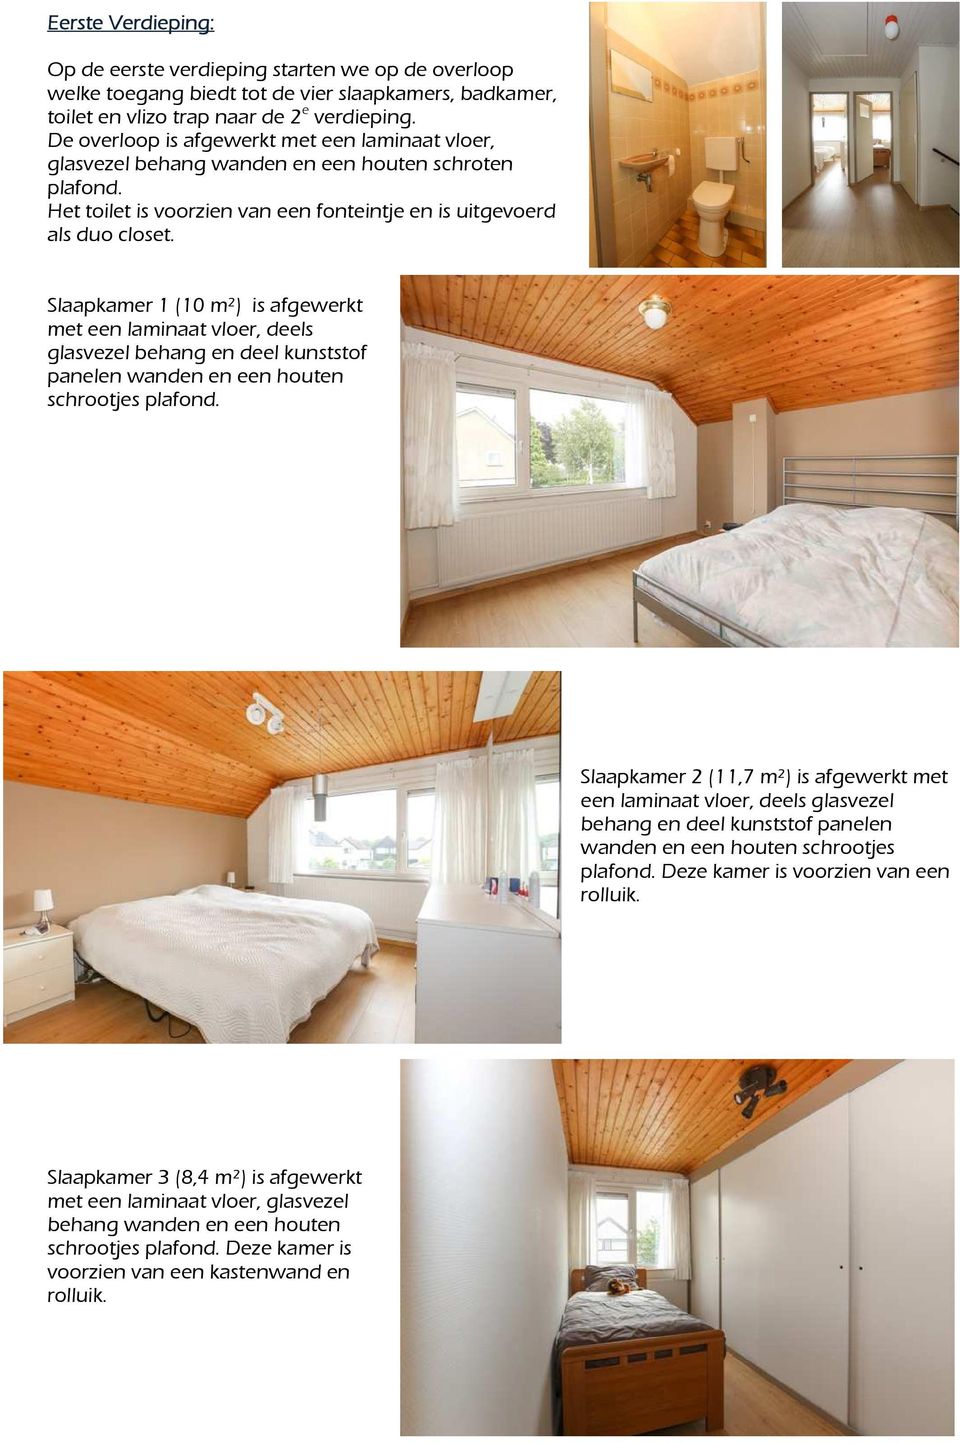 Slaapkamer 1 (10 m²) is afgewerkt met een laminaat vloer, deels glasvezel behang en deel kunststof panelen wanden en een houten schrootjes plafond.